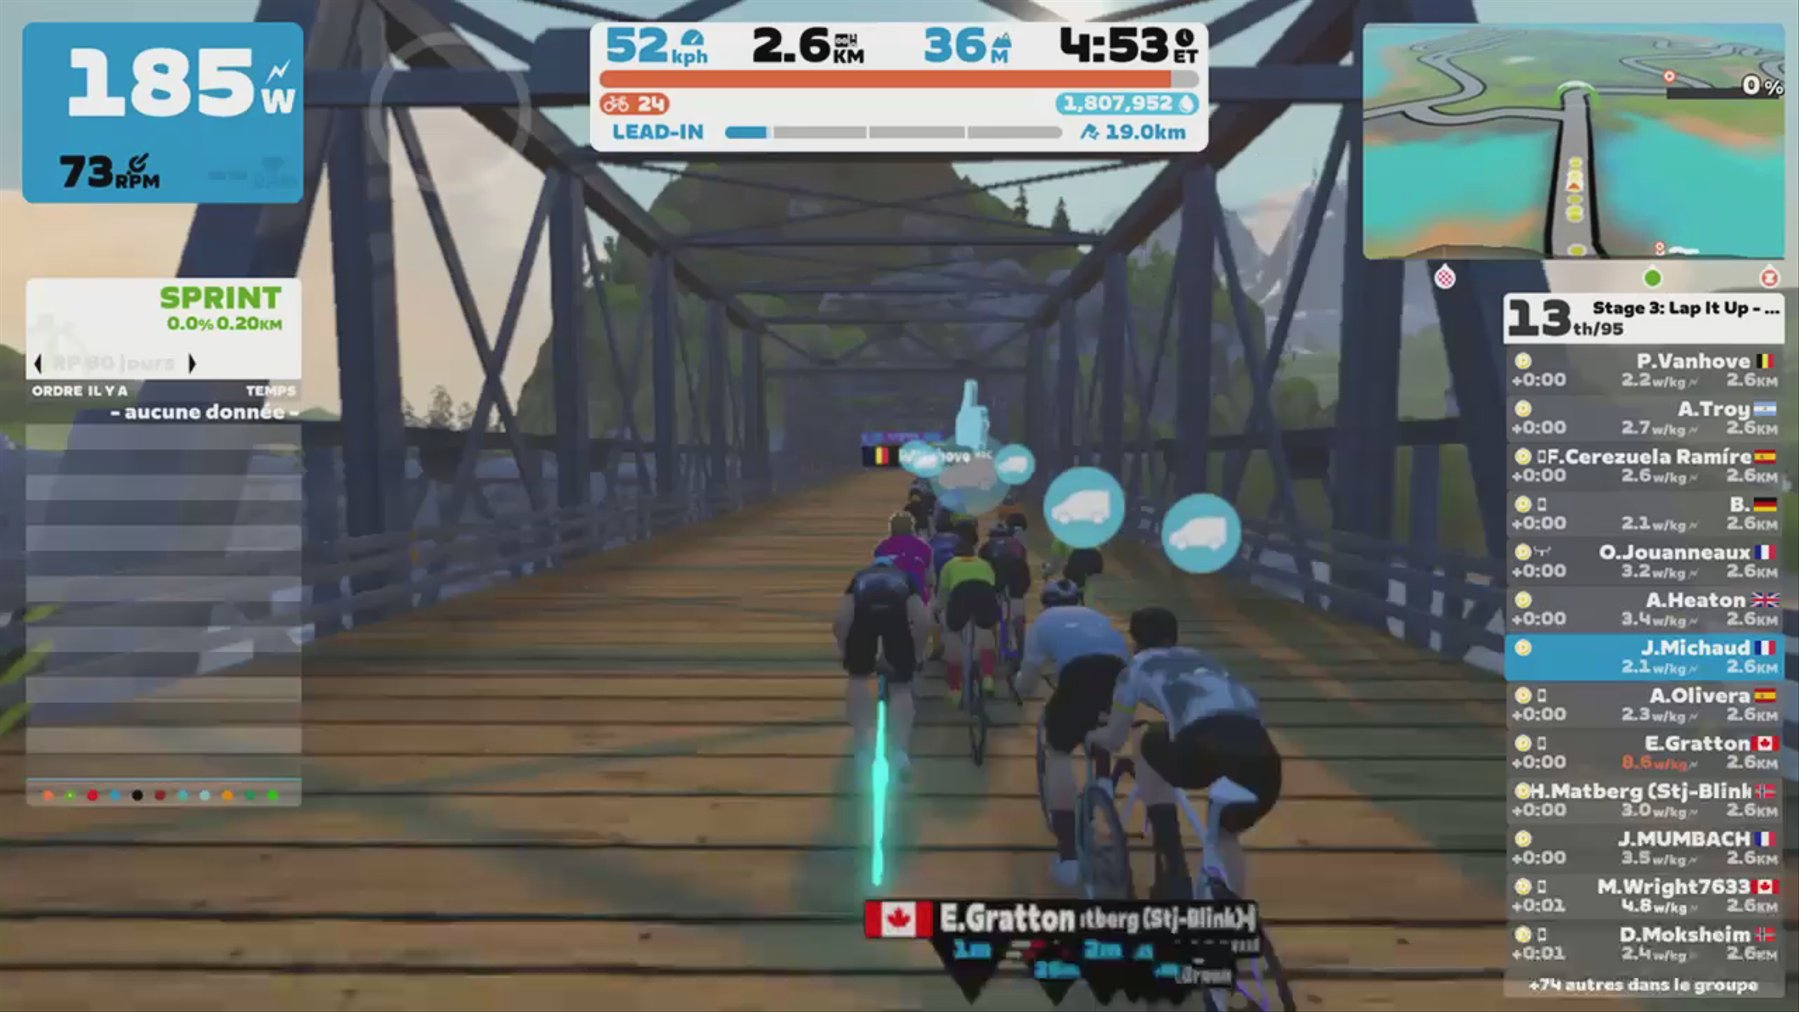 Zwift - Race: Stage 3: Lap It Up - Seaside Sprint (D) on Seaside Sprint in Watopia